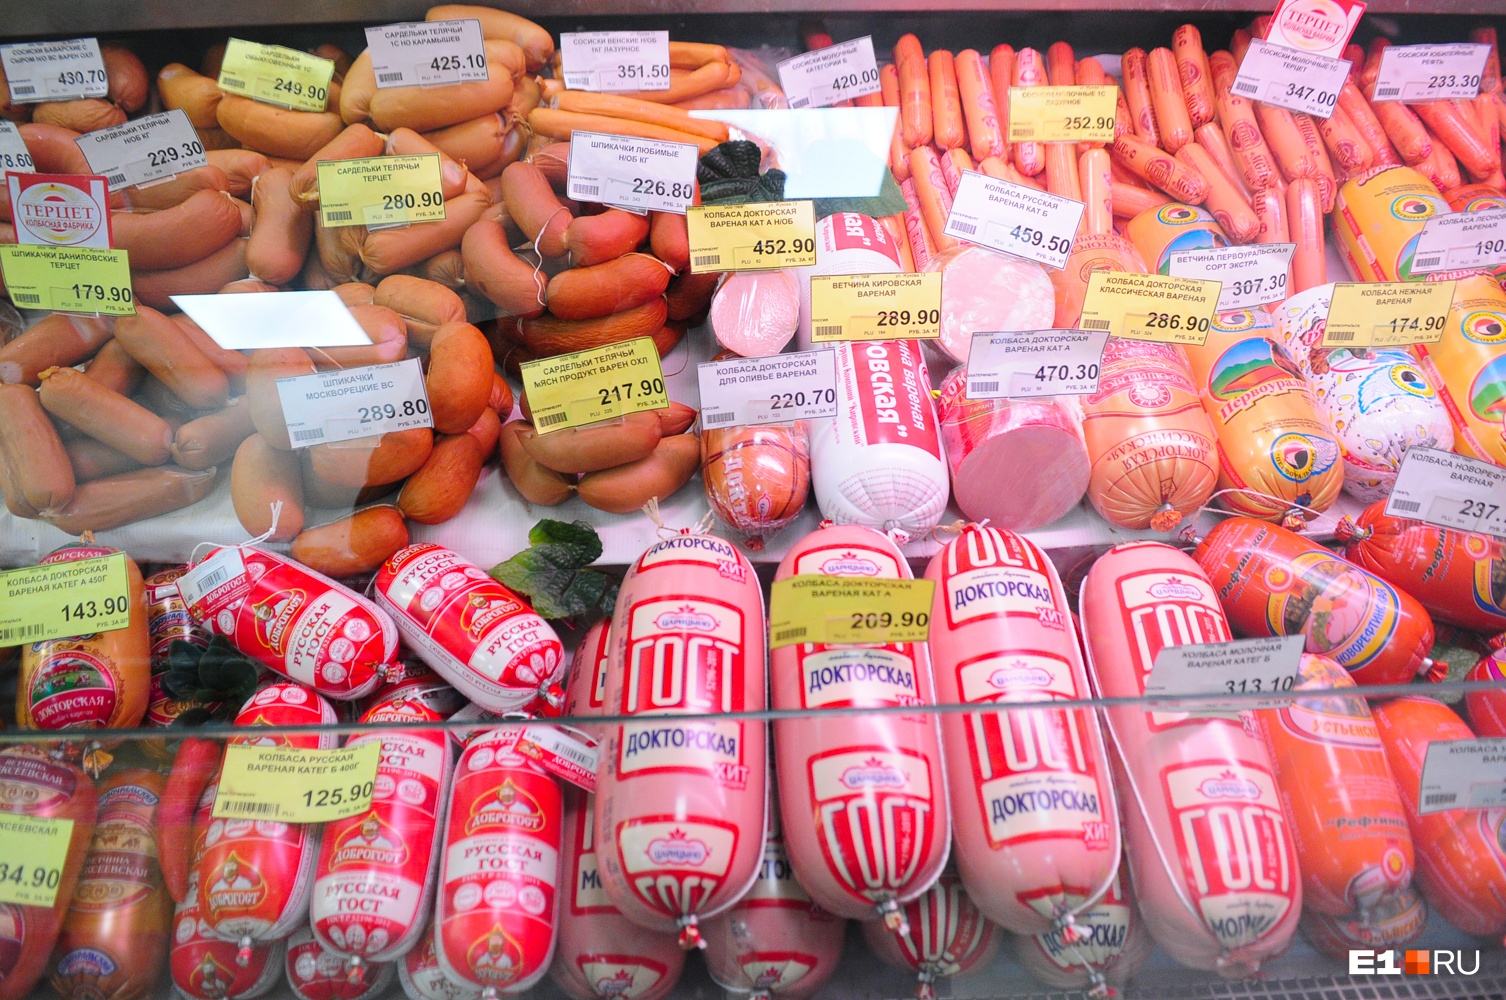 Сахар подорожал, колбаса подешевела: что происходит с ценами на продукты в Свердловской области